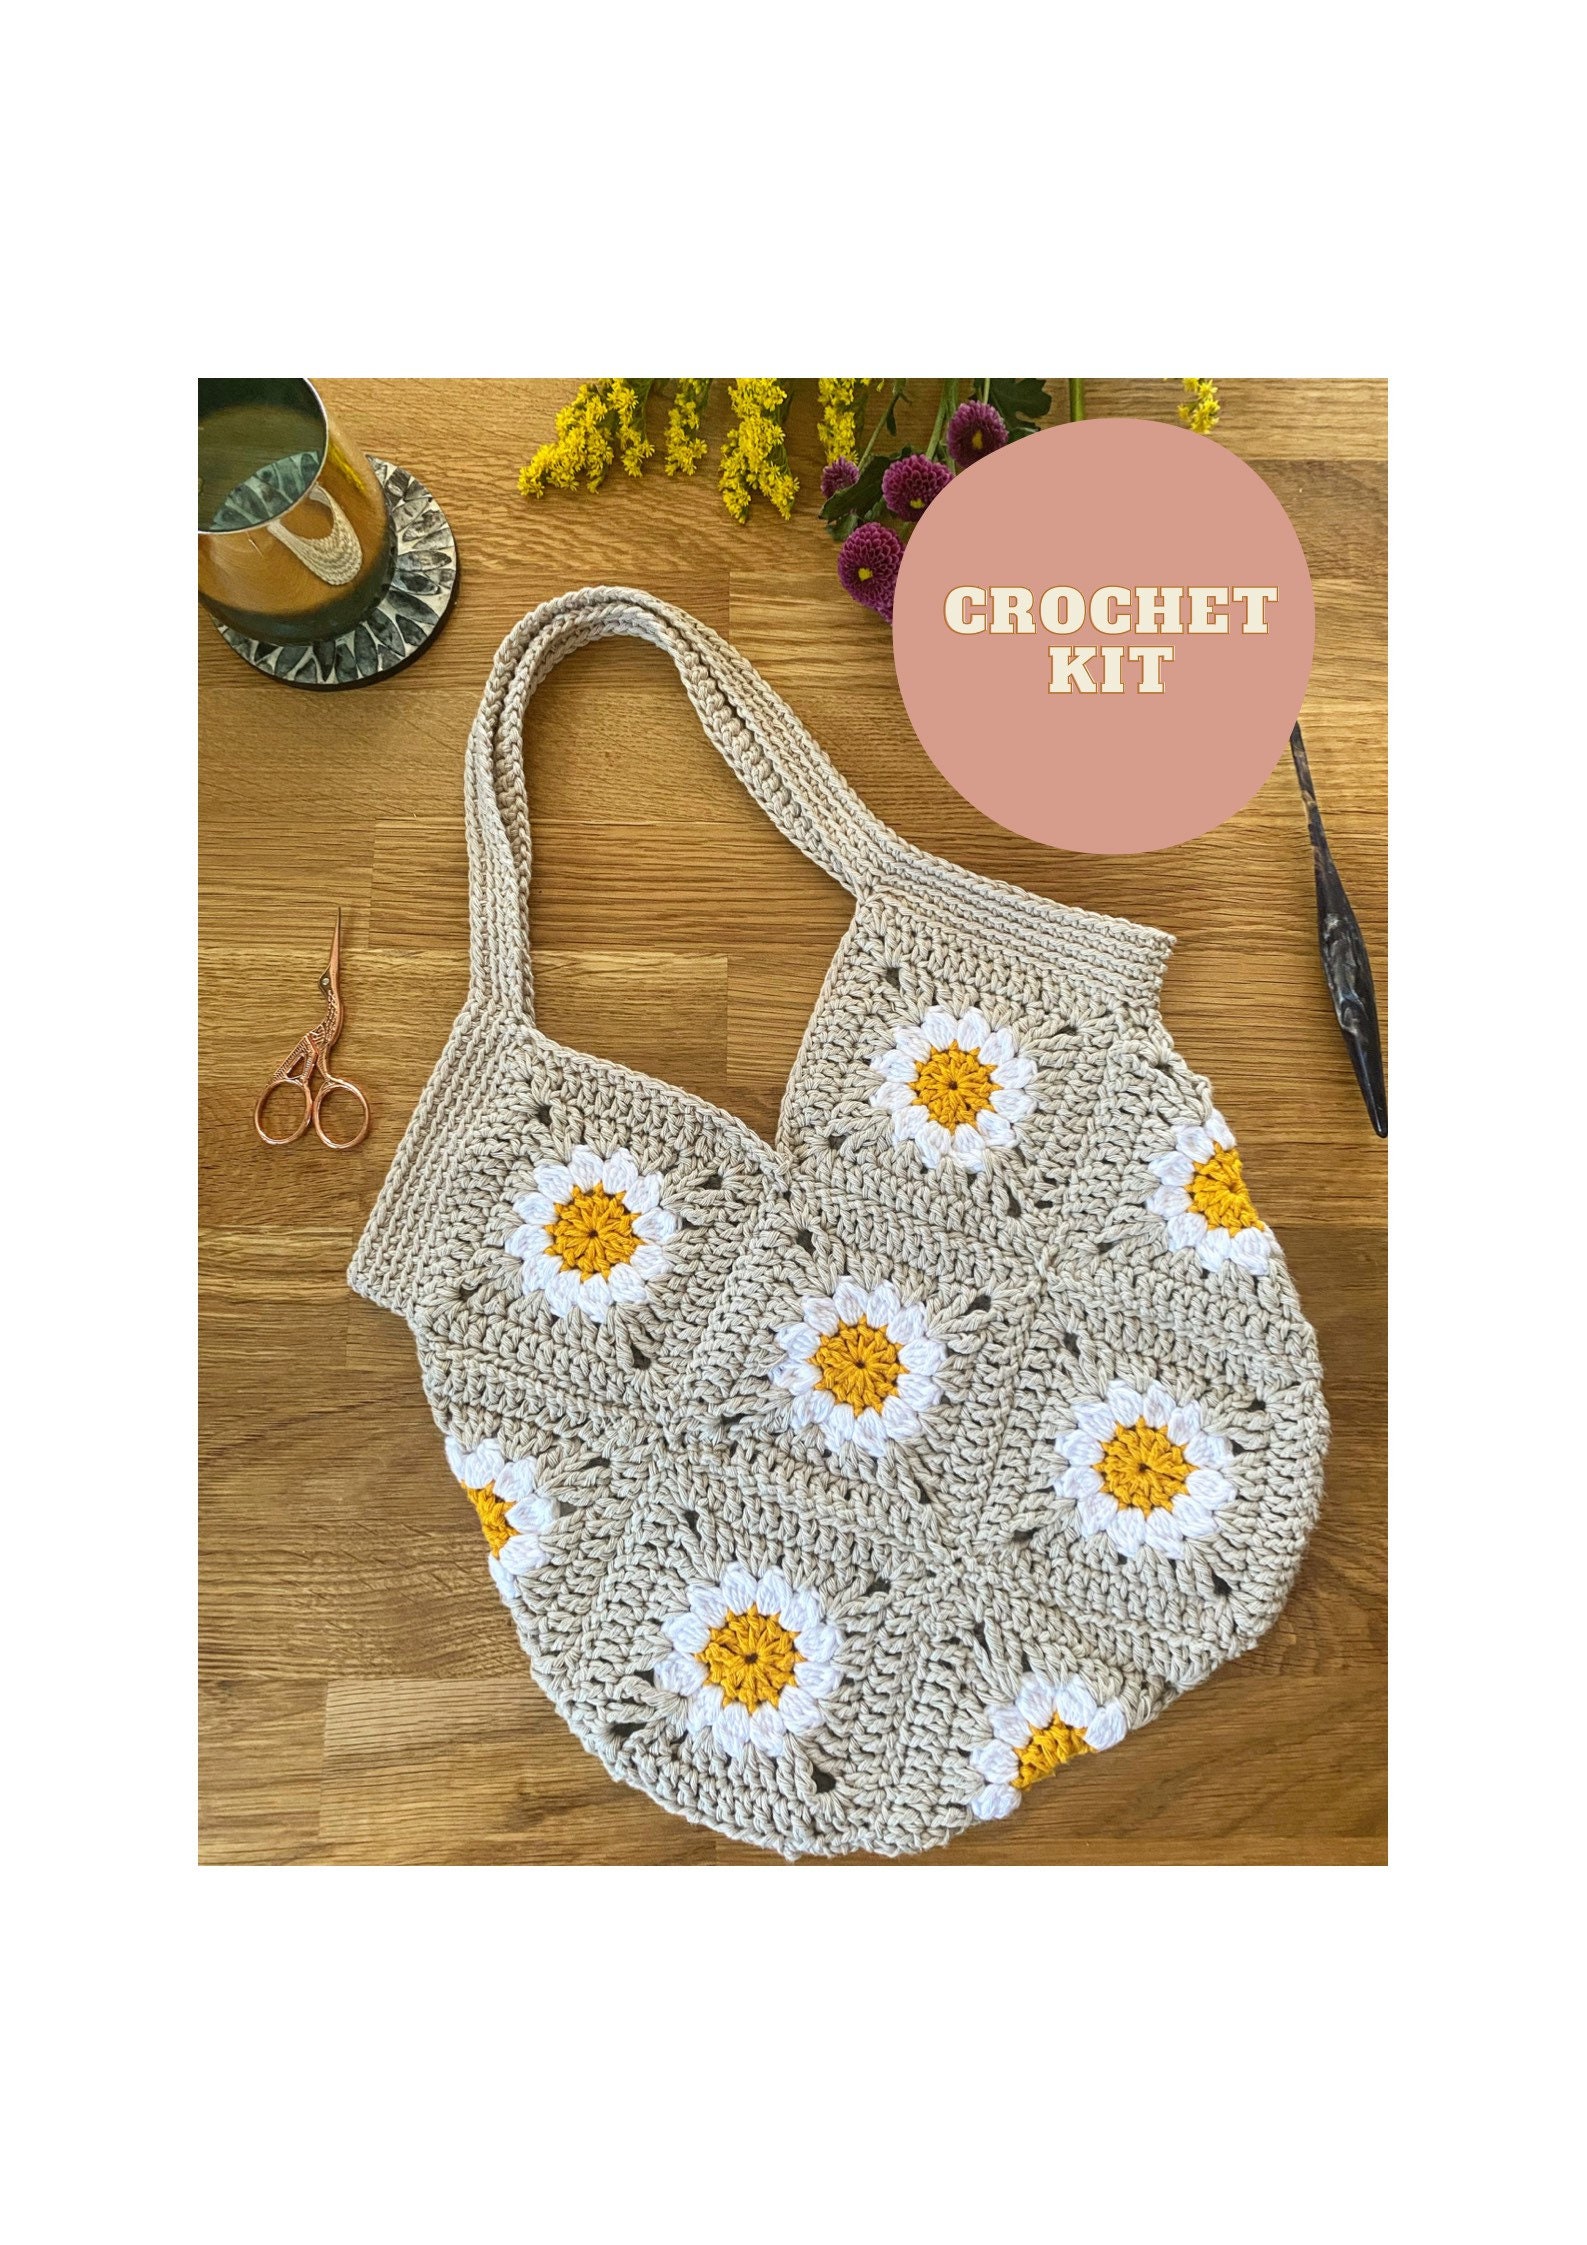 Crochet Basket Kit, Beginners Crochet Kit, Sustainable Summer Crochet  Project 